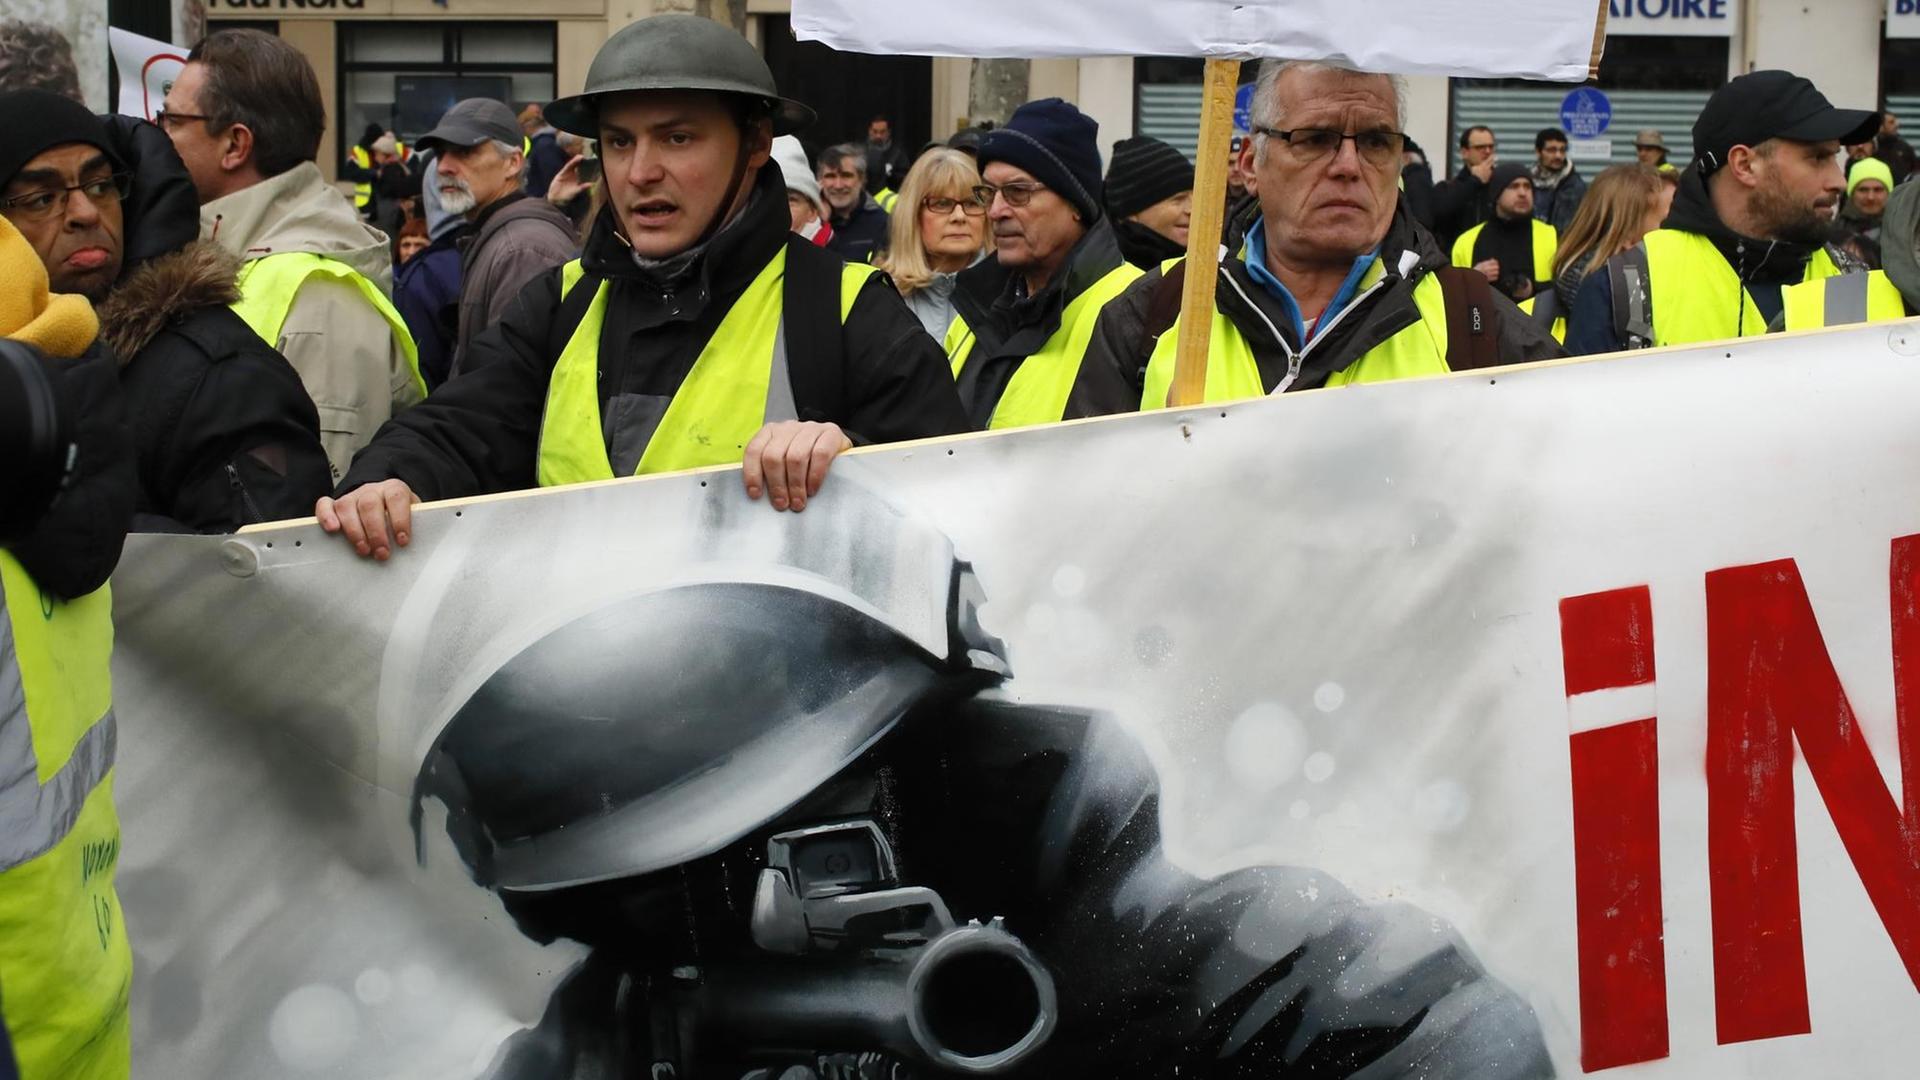 Demonstranten halten während des Protests der "Gelbwesten" ein Transparent, das einen Polizisten mit einer Waffe abbildet.